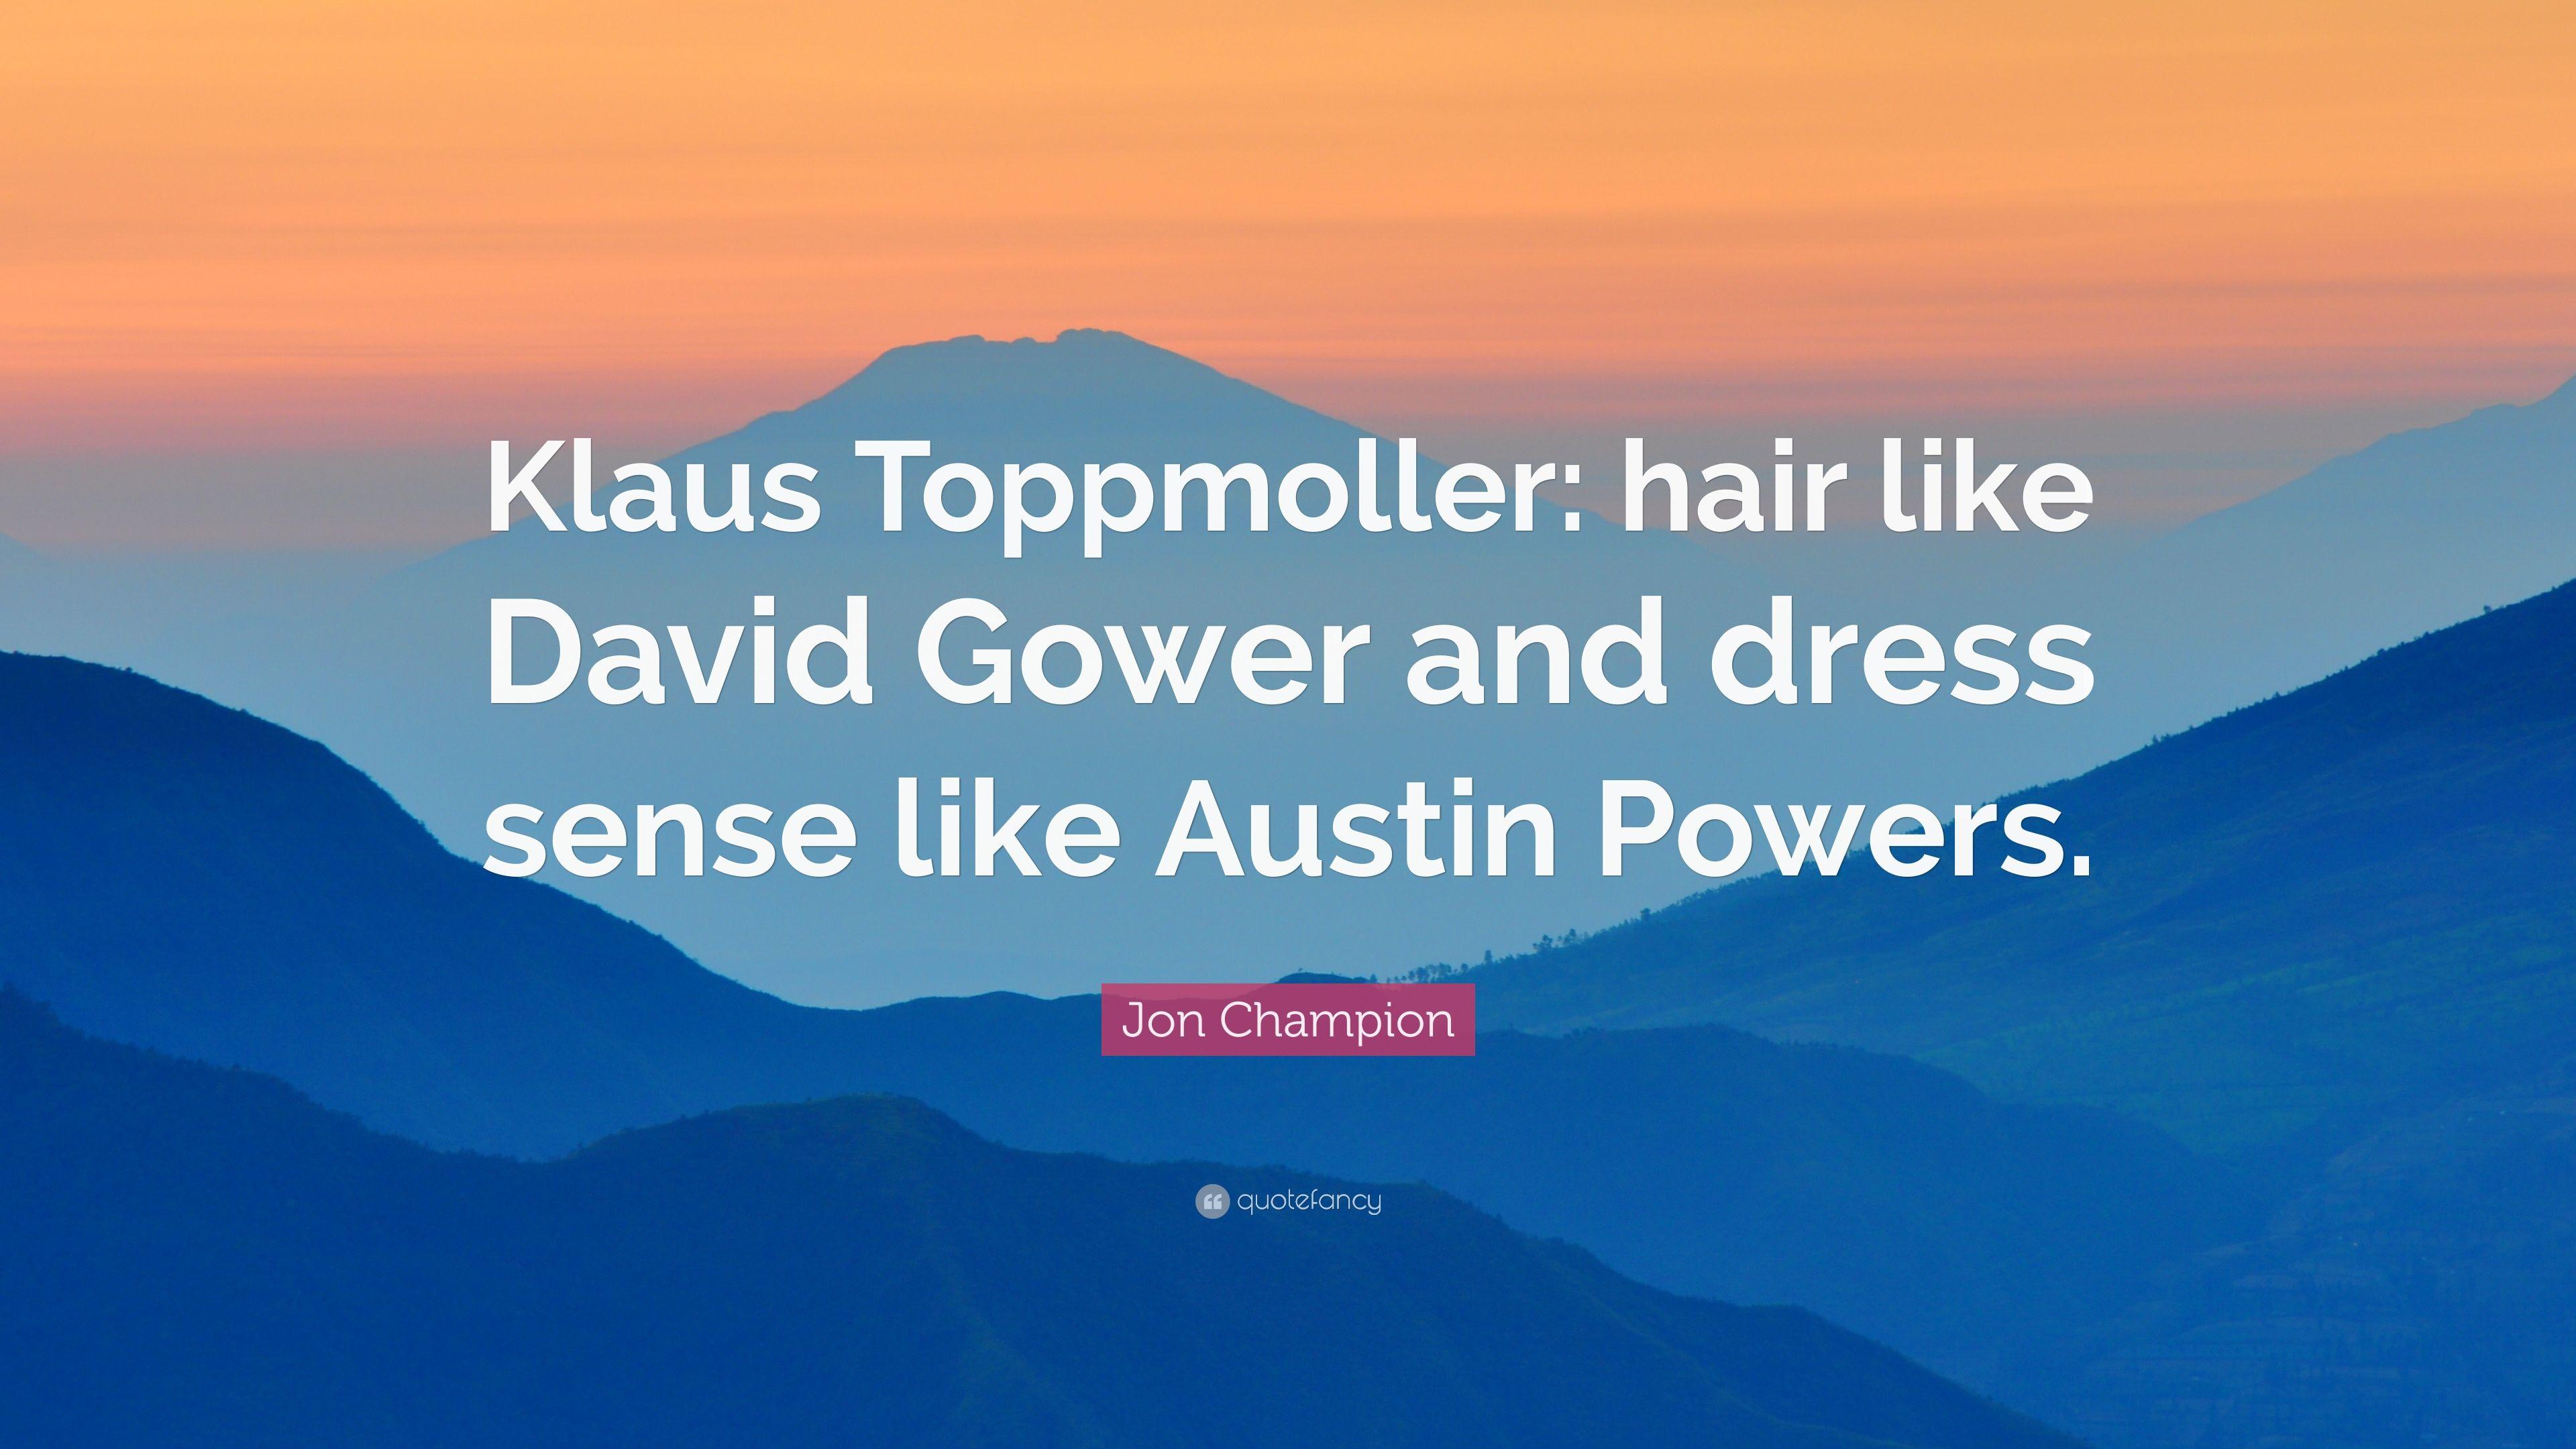 Jon Champion Quote: “Klaus Toppmoller: hair like David Gower